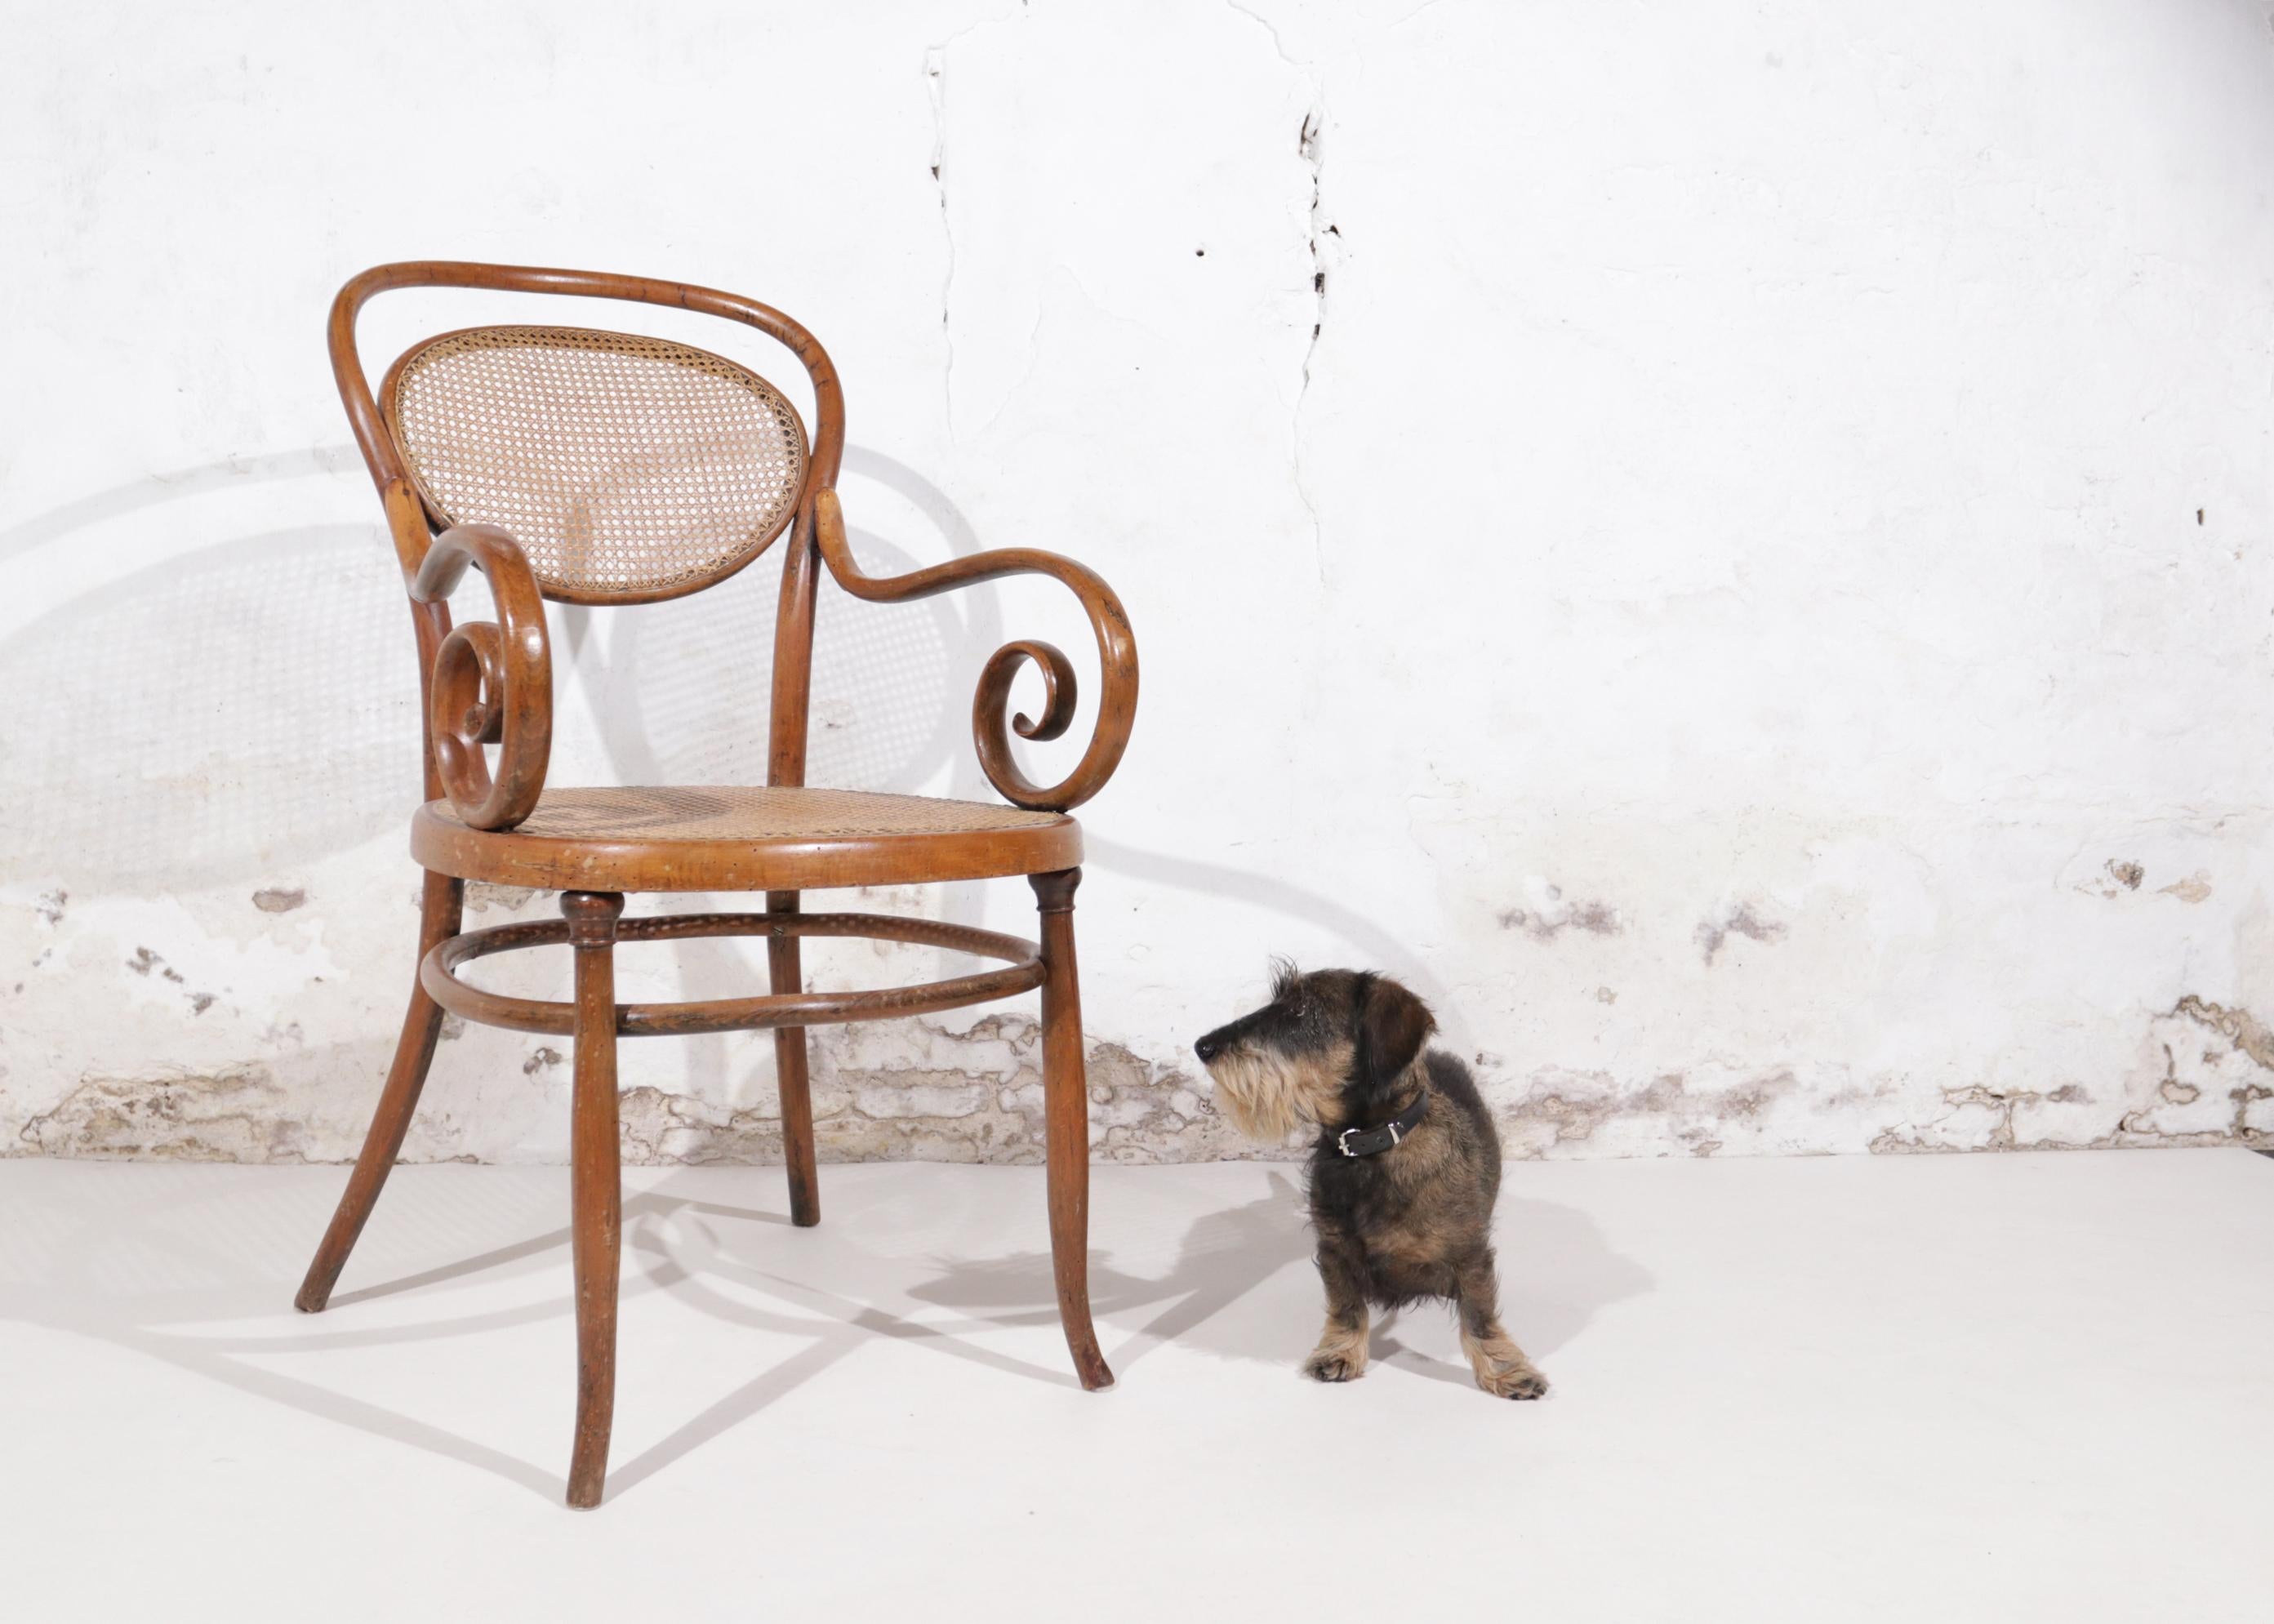 1885 wurde die gesamte Garnitur Nr. 11 vorgestellt: Sofa, Stuhl und Sessel, die sich dadurch auszeichneten, dass ein ovales Teil - oder drei im Falle des Sofas - in die Rückenlehne eingearbeitet war. . Das Sofa hat ein kleines ovales Stück in der